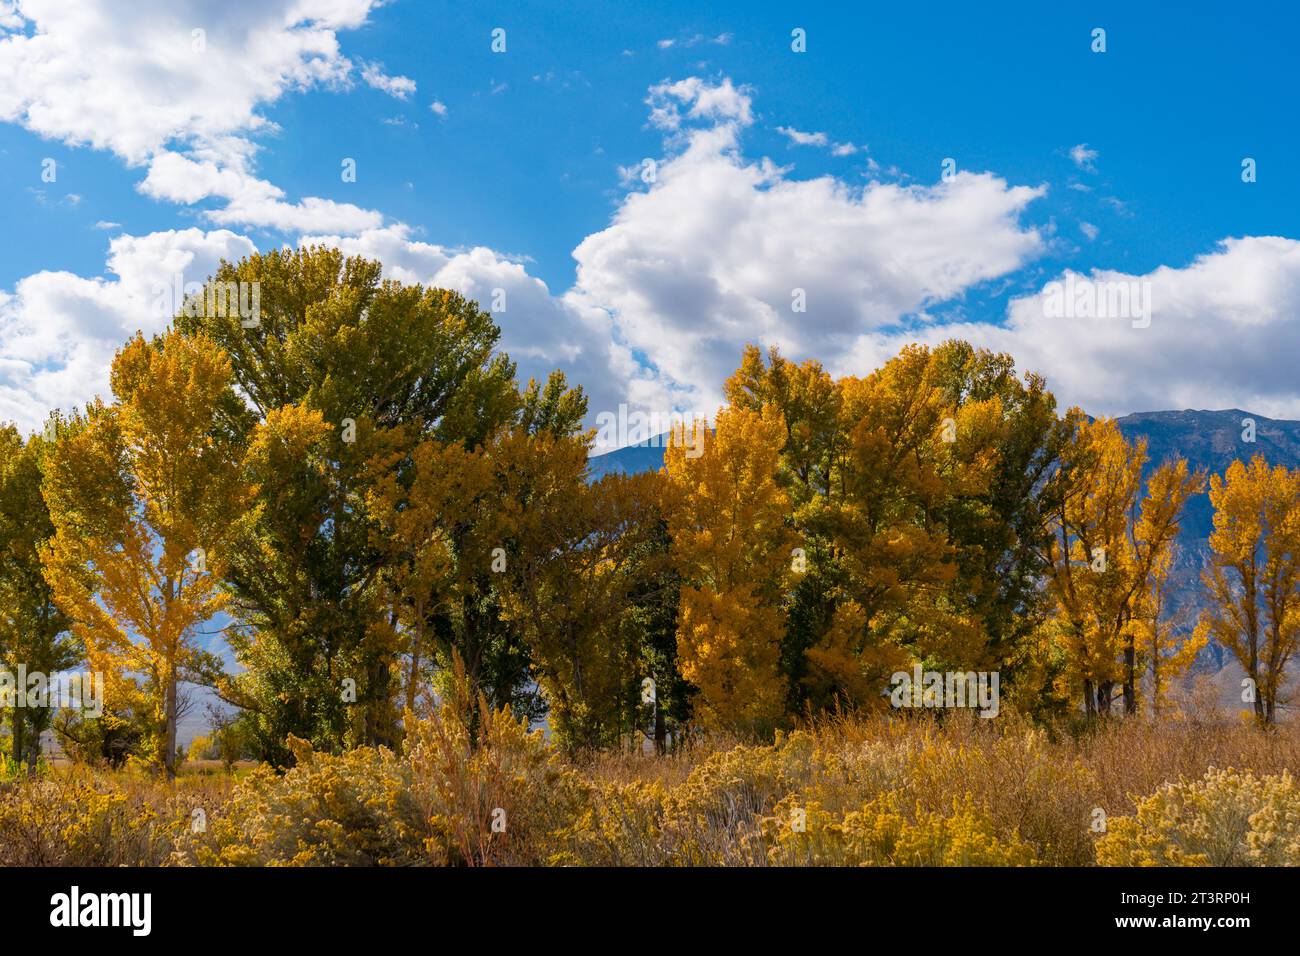 Im Owens Valley außerhalb von Bishop California werden große Pappelbäume in ihre herbstgelben Farben verwandelt. Rundes Tal, blauer Himmel, sc Stockfoto